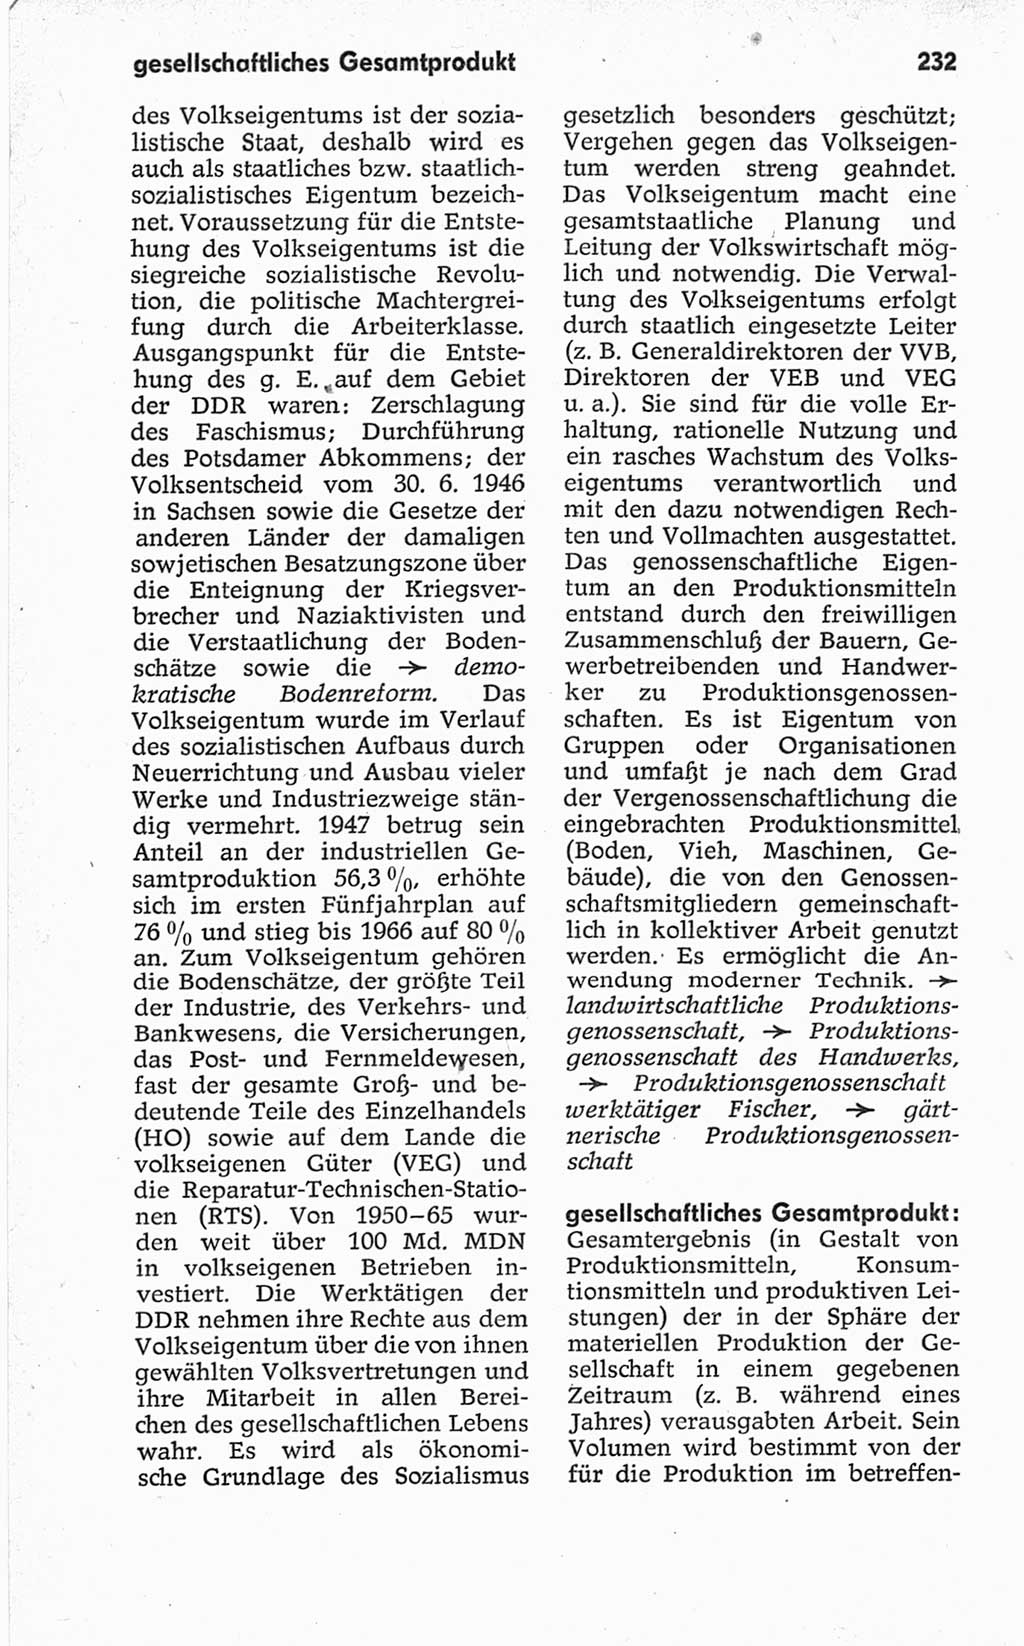 Kleines politisches Wörterbuch [Deutsche Demokratische Republik (DDR)] 1967, Seite 232 (Kl. pol. Wb. DDR 1967, S. 232)